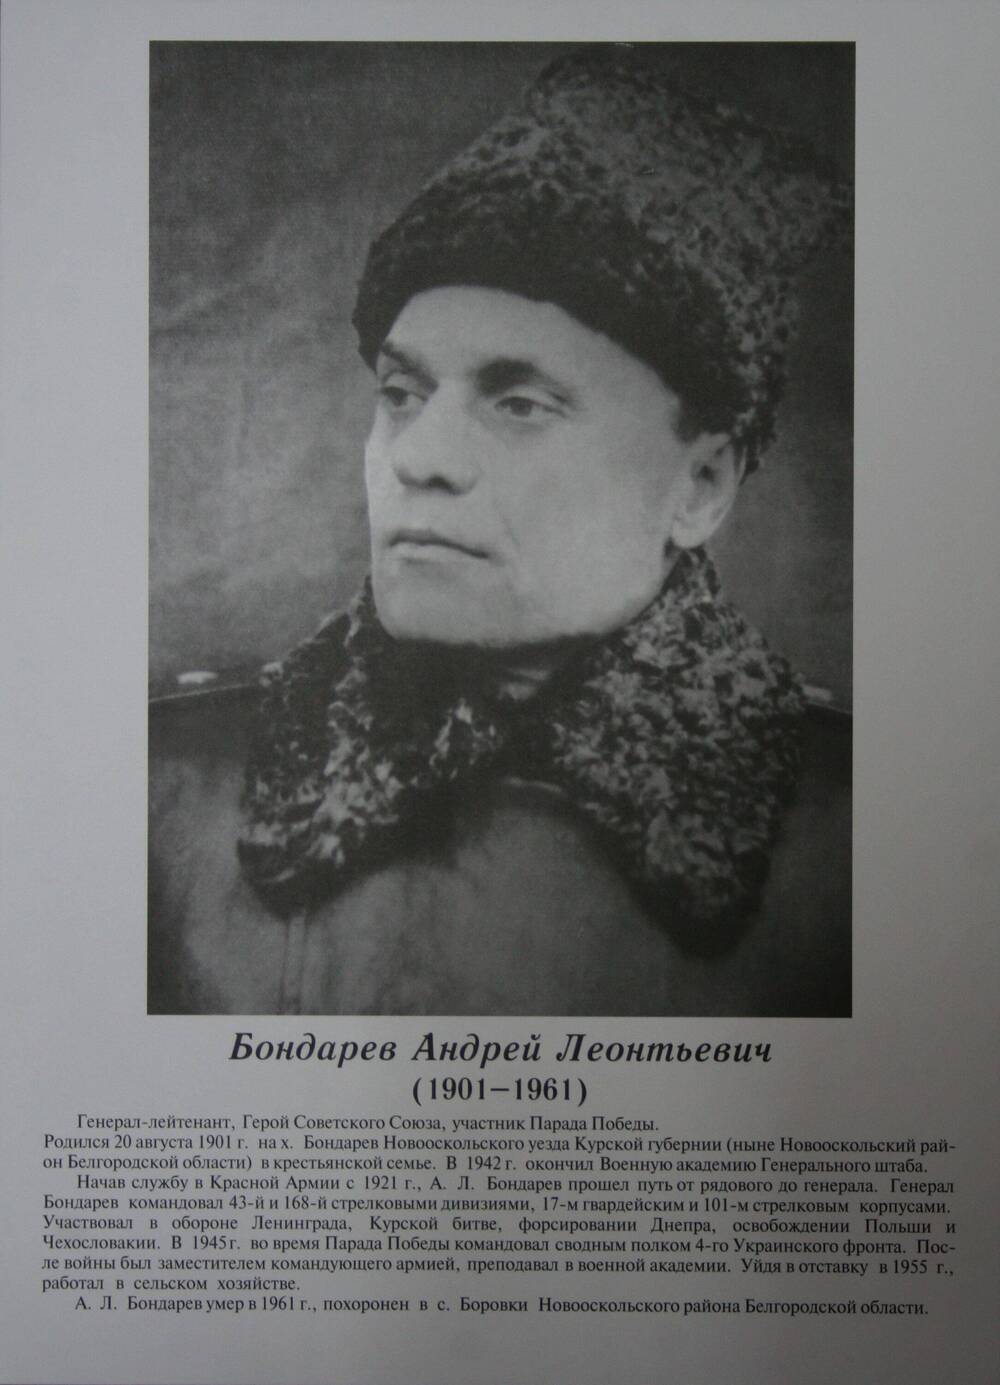 Плакат (фотопортрет) из комплекта Галерея славных имен Белгородчины. Бондарев Андрей Леонтьевич (1901-1961).